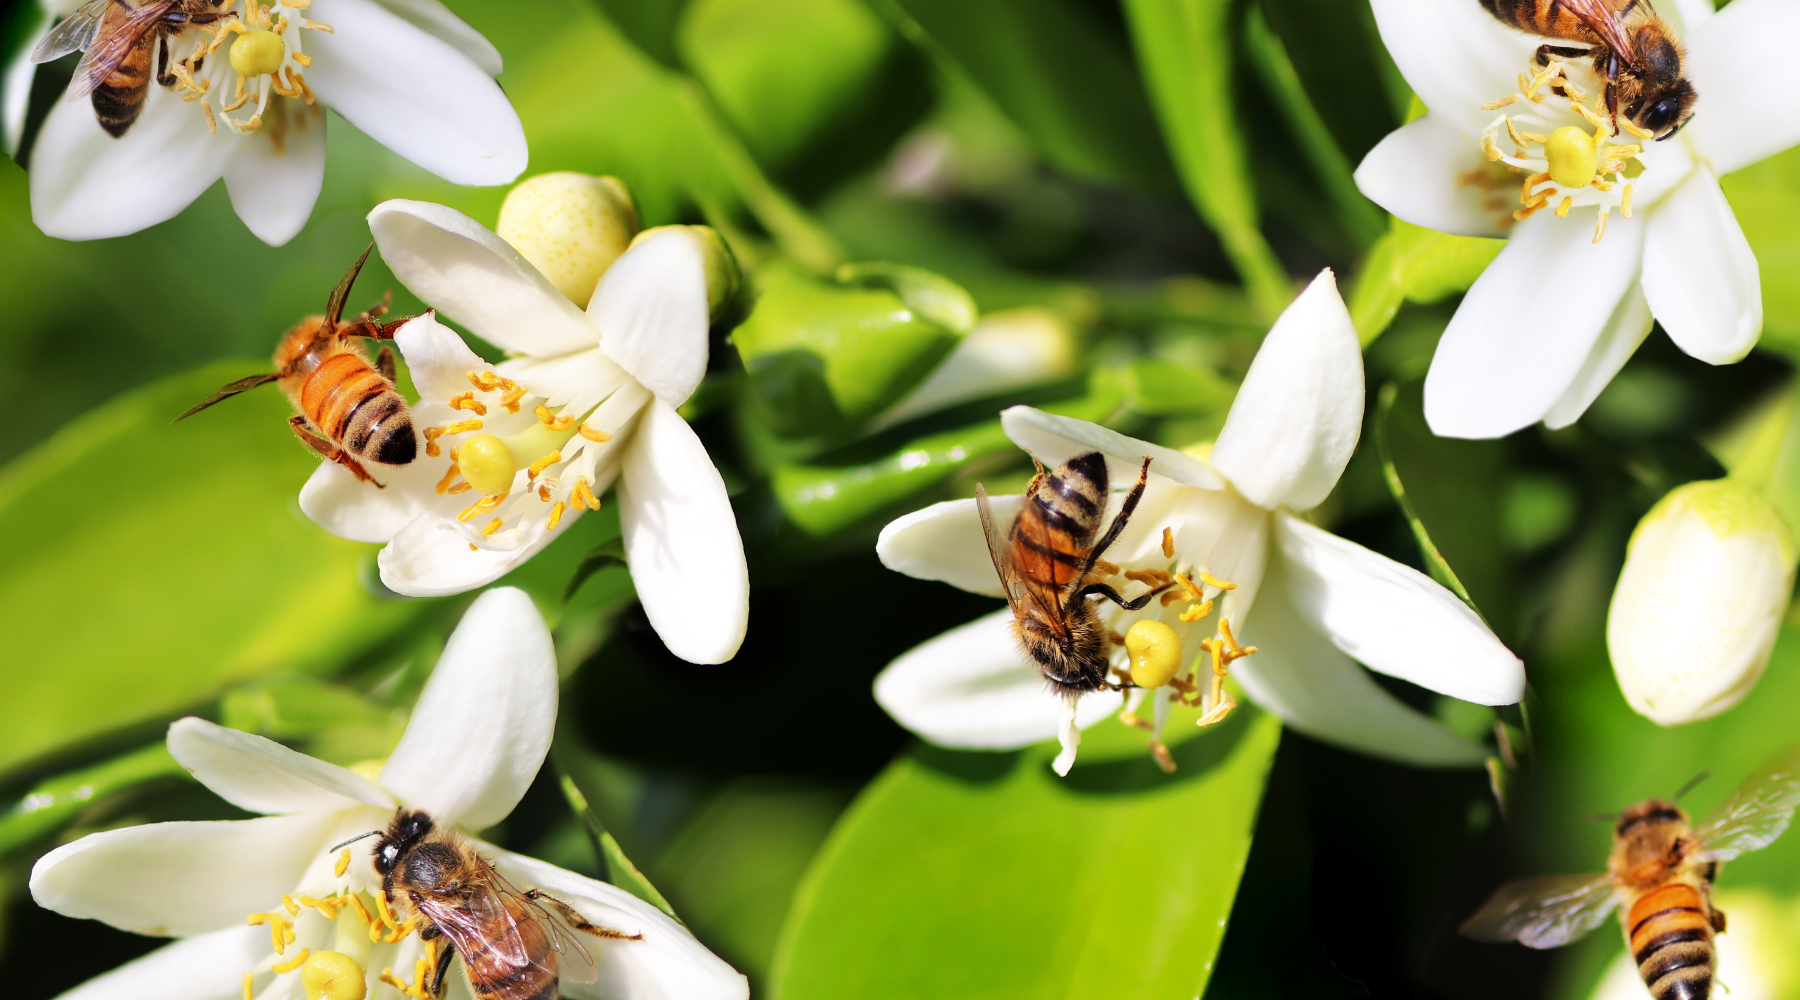 Twenty tips to help bees thrive in your garden